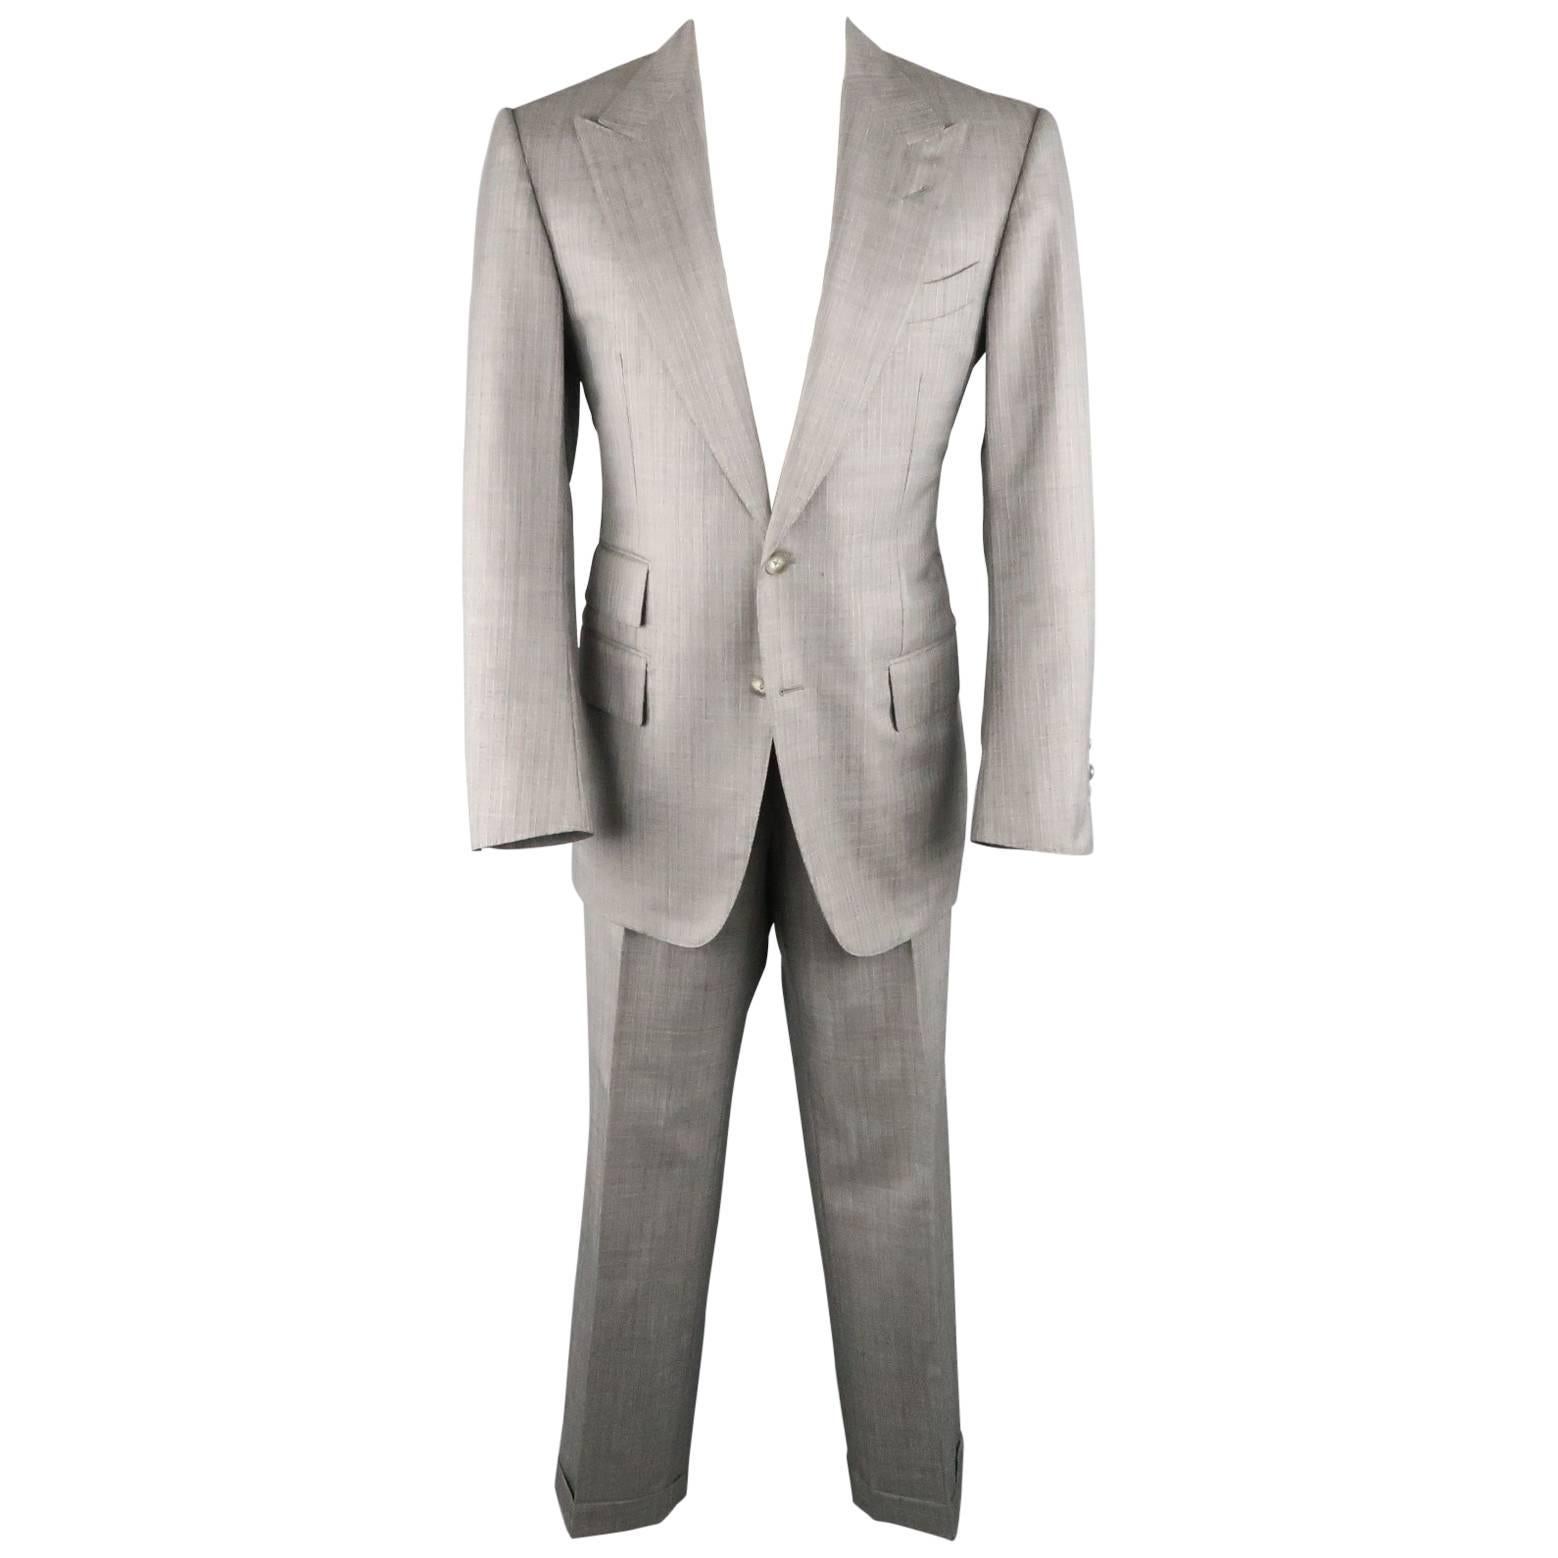 Tom Ford Suit - Men's Grey Herringbone Wool Peak Lapel Jacket & Pants